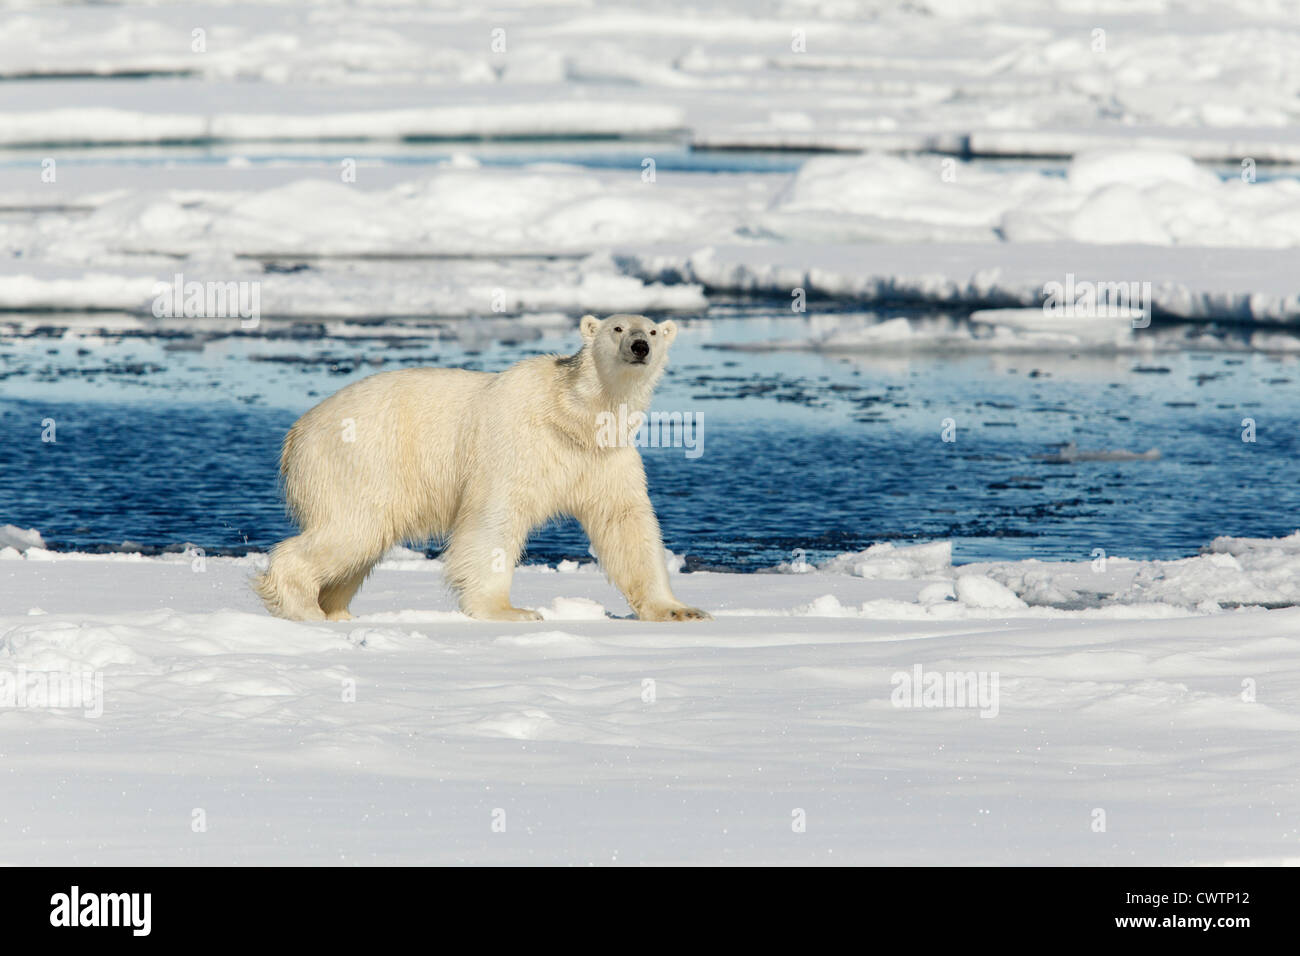 Orso polare (Ursus maritimus) nel ghiaccio, Svalbard island, Norvegia. Foto Stock